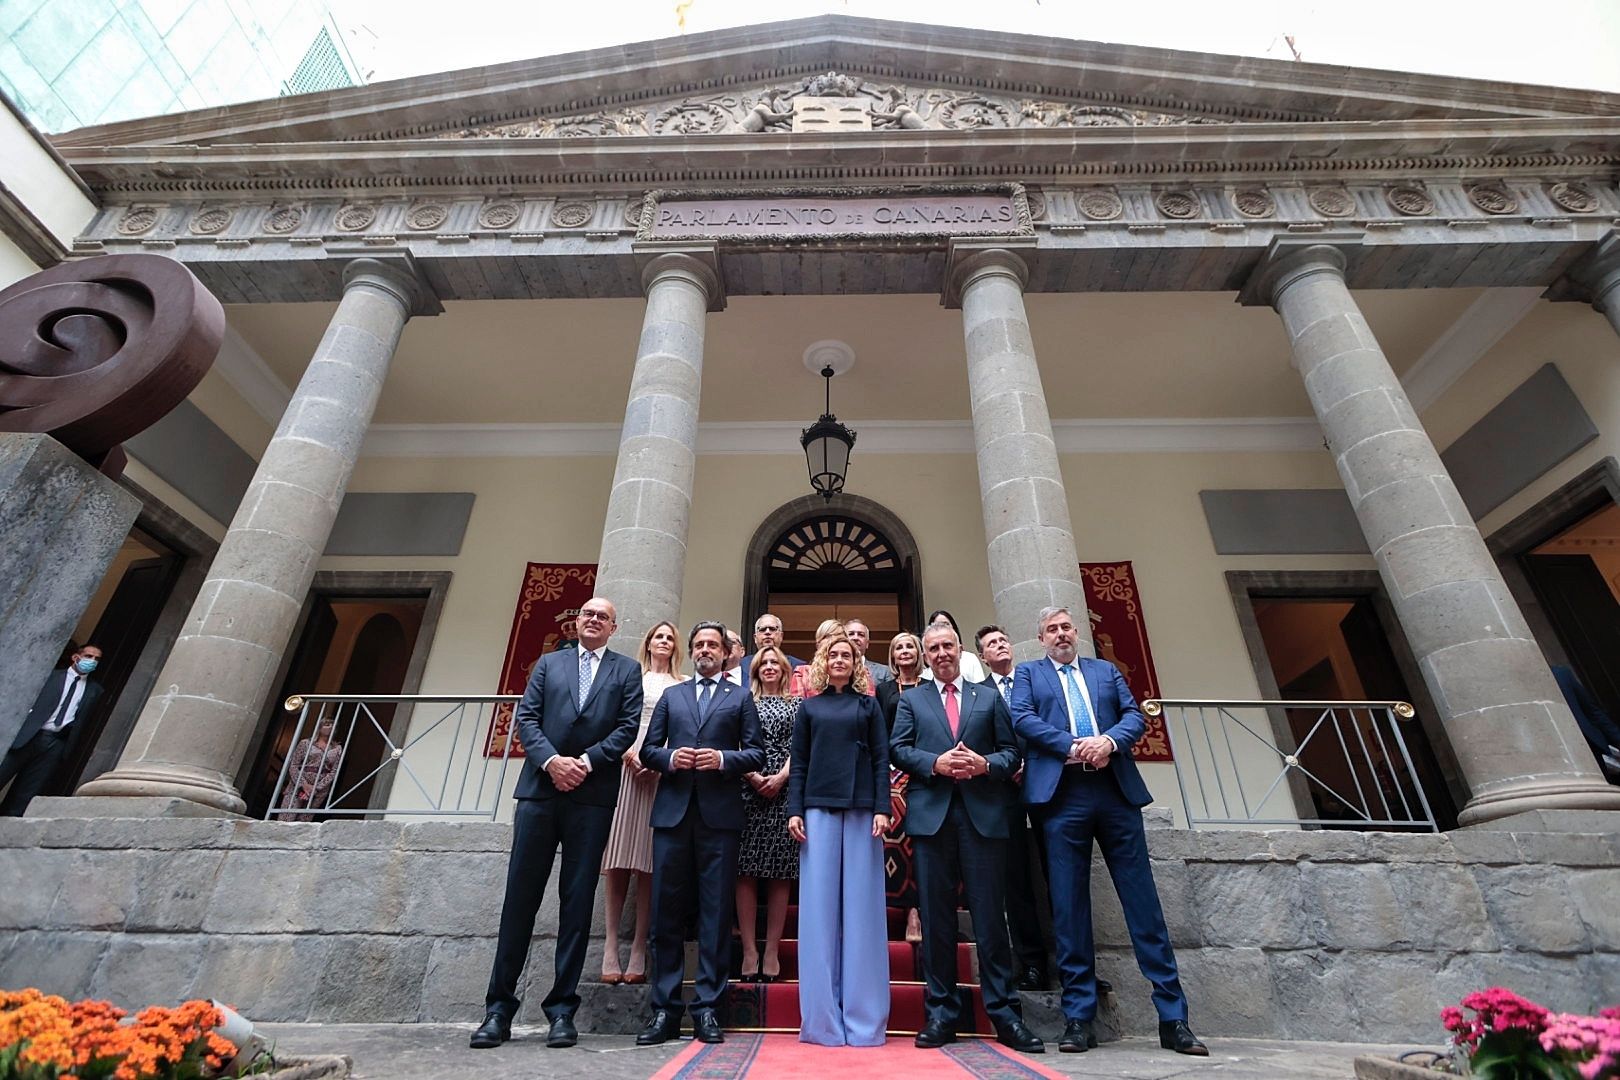 40º aniversario del Parlamento de Canarias